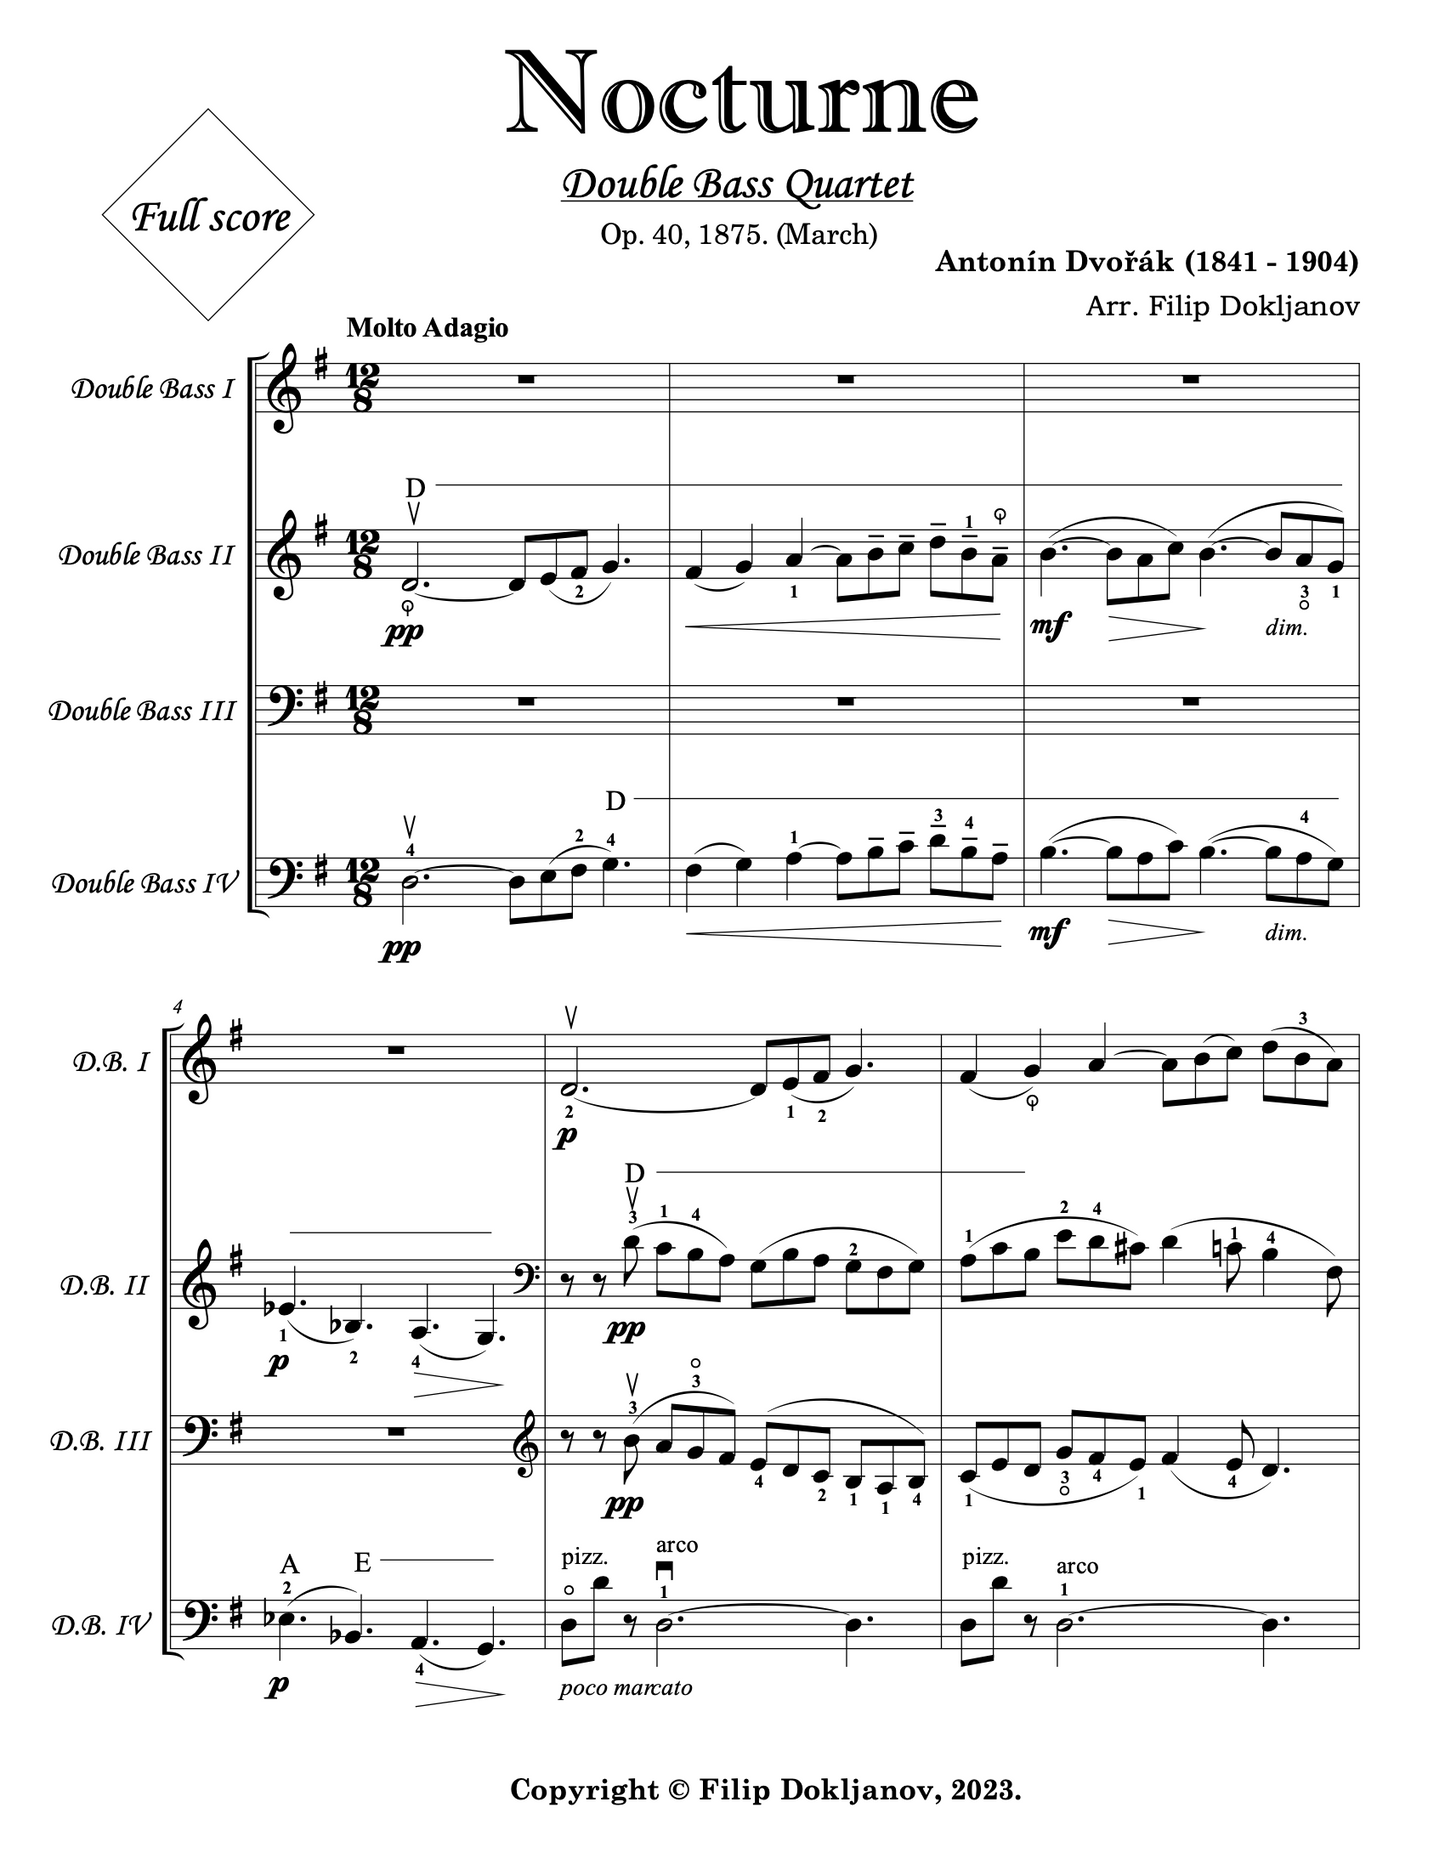 Dvořák: Nocturne in B Major Op. 40 arranged for double bass quartet (Dokljanov)